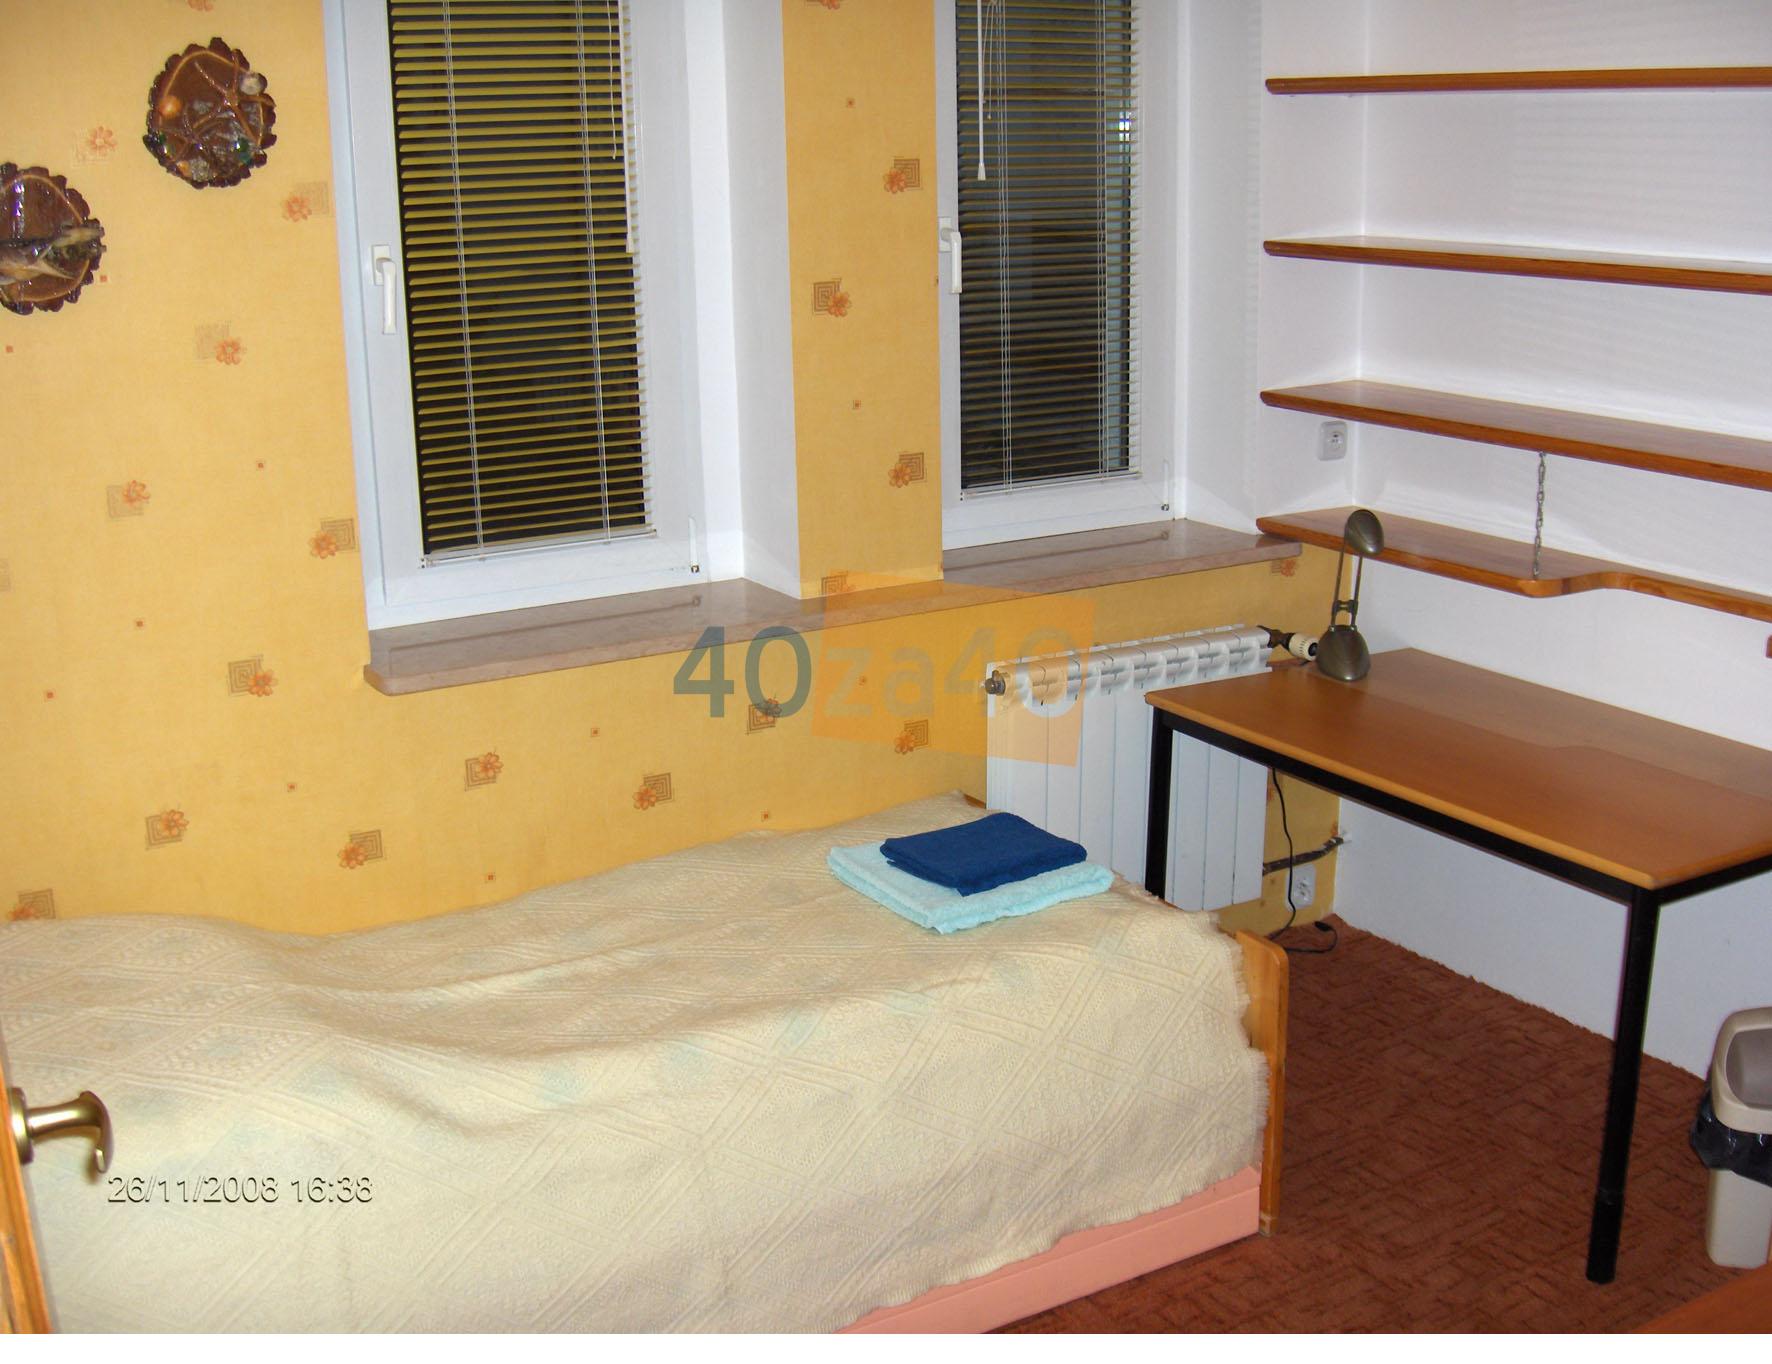 Dom do wynajęcia, powierzchnia: 140 m2, pokoje: 4, cena: 3 300,00 PLN, Poznań, kontakt: PL +48 607 414 918